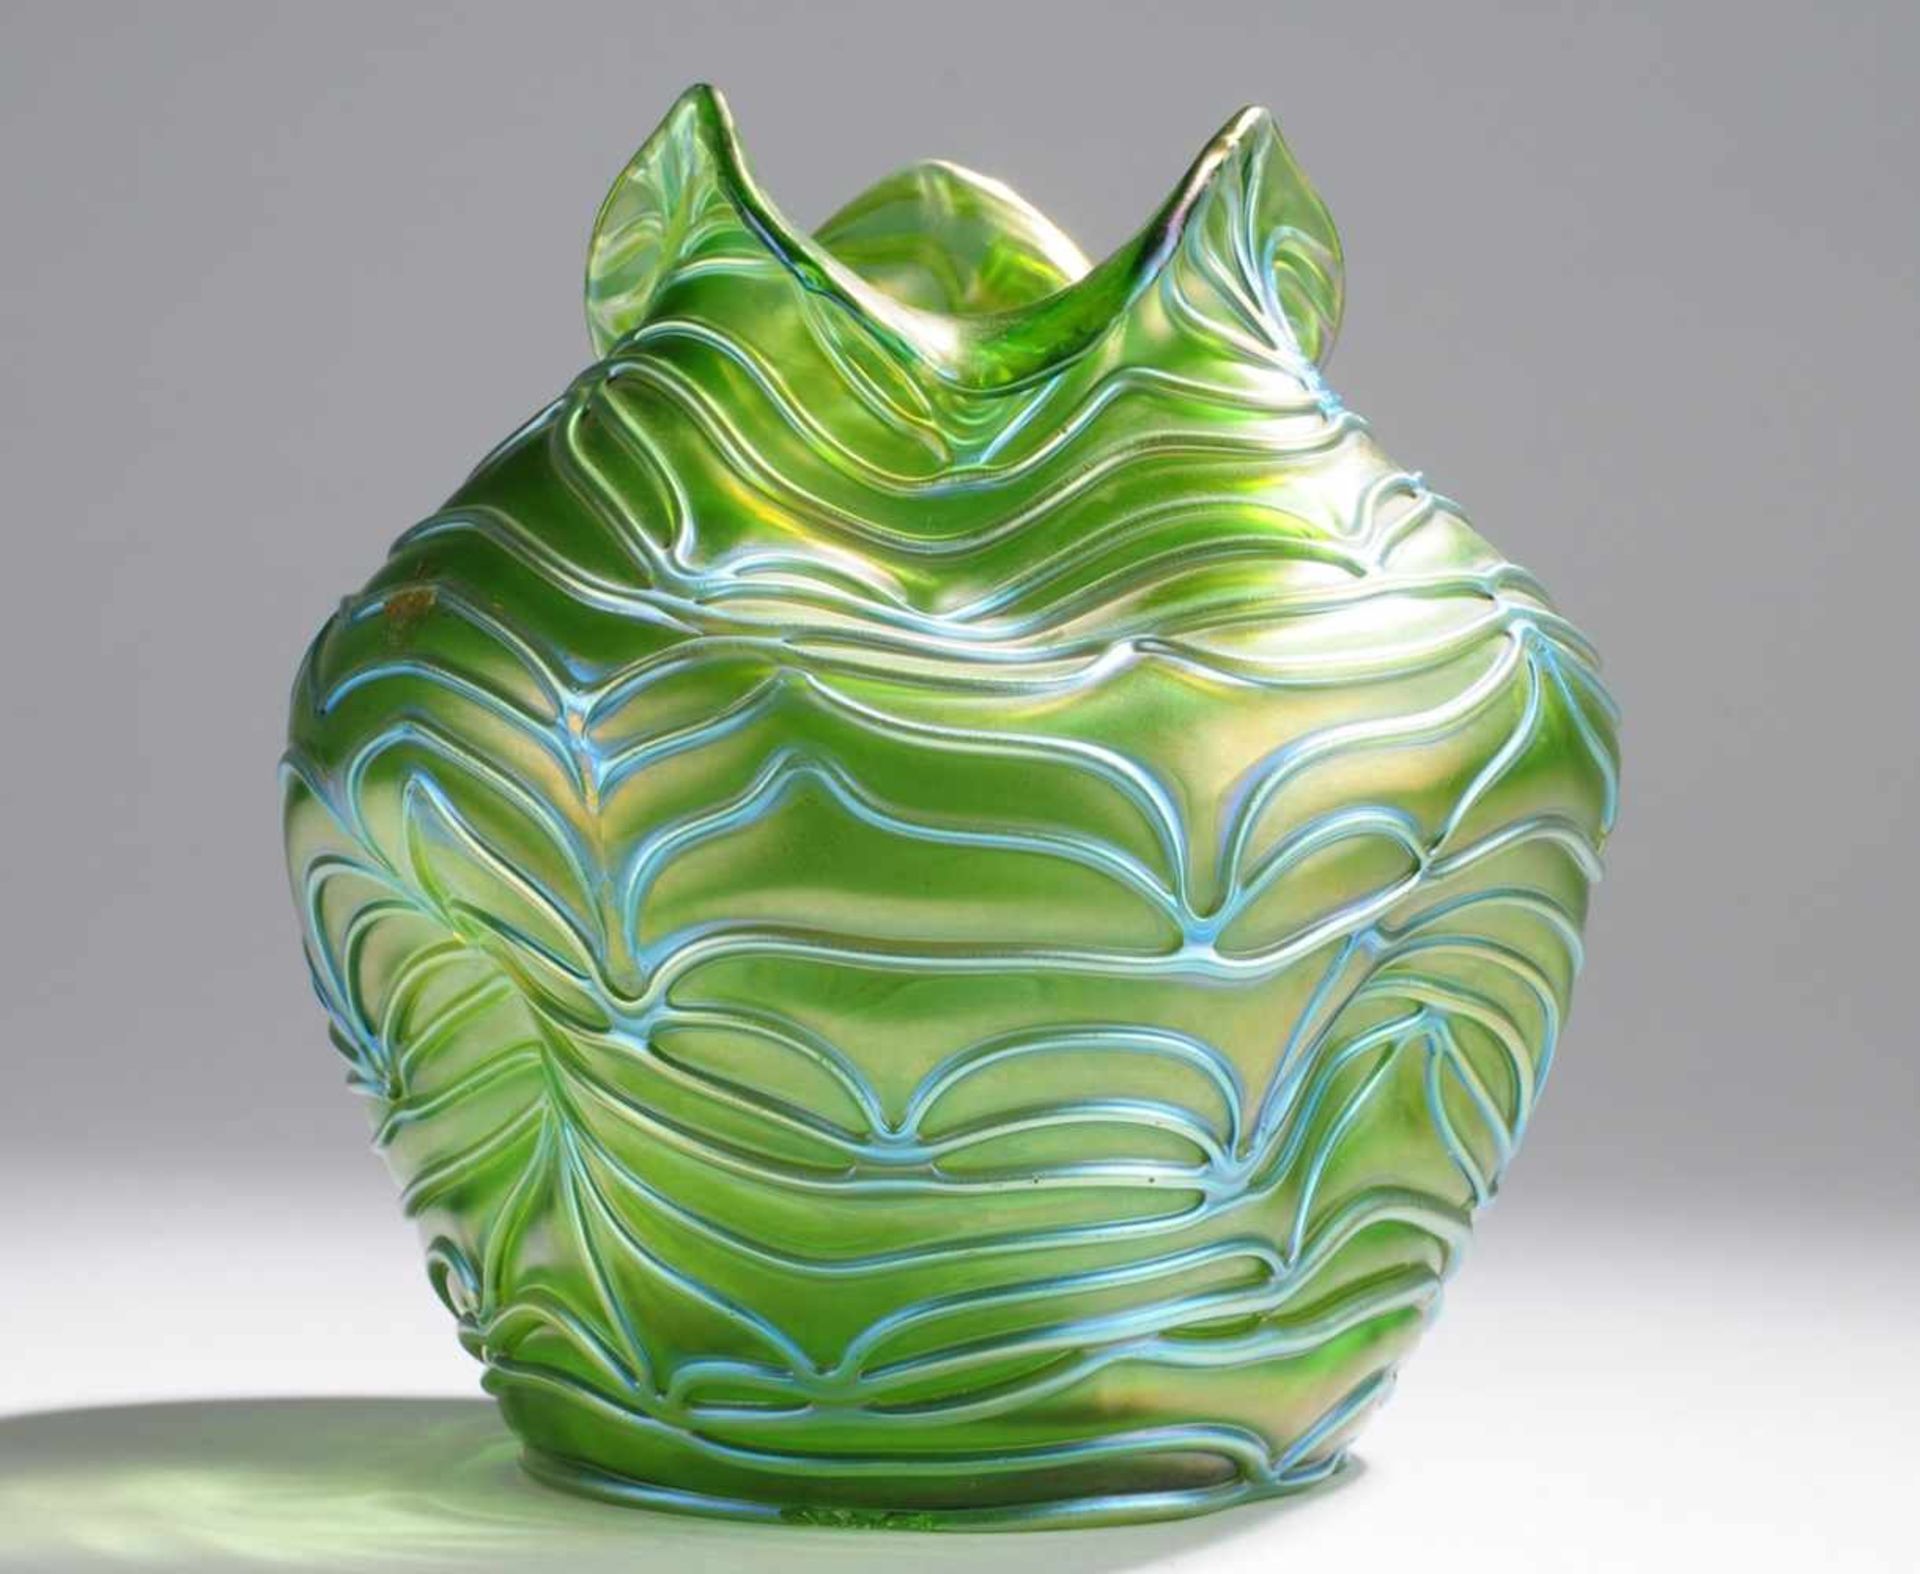 Jugendstil-Vase "Formosa"Grünes Glas, reduziert u. matt irisiert. Formgeblasen u. frei geformt,